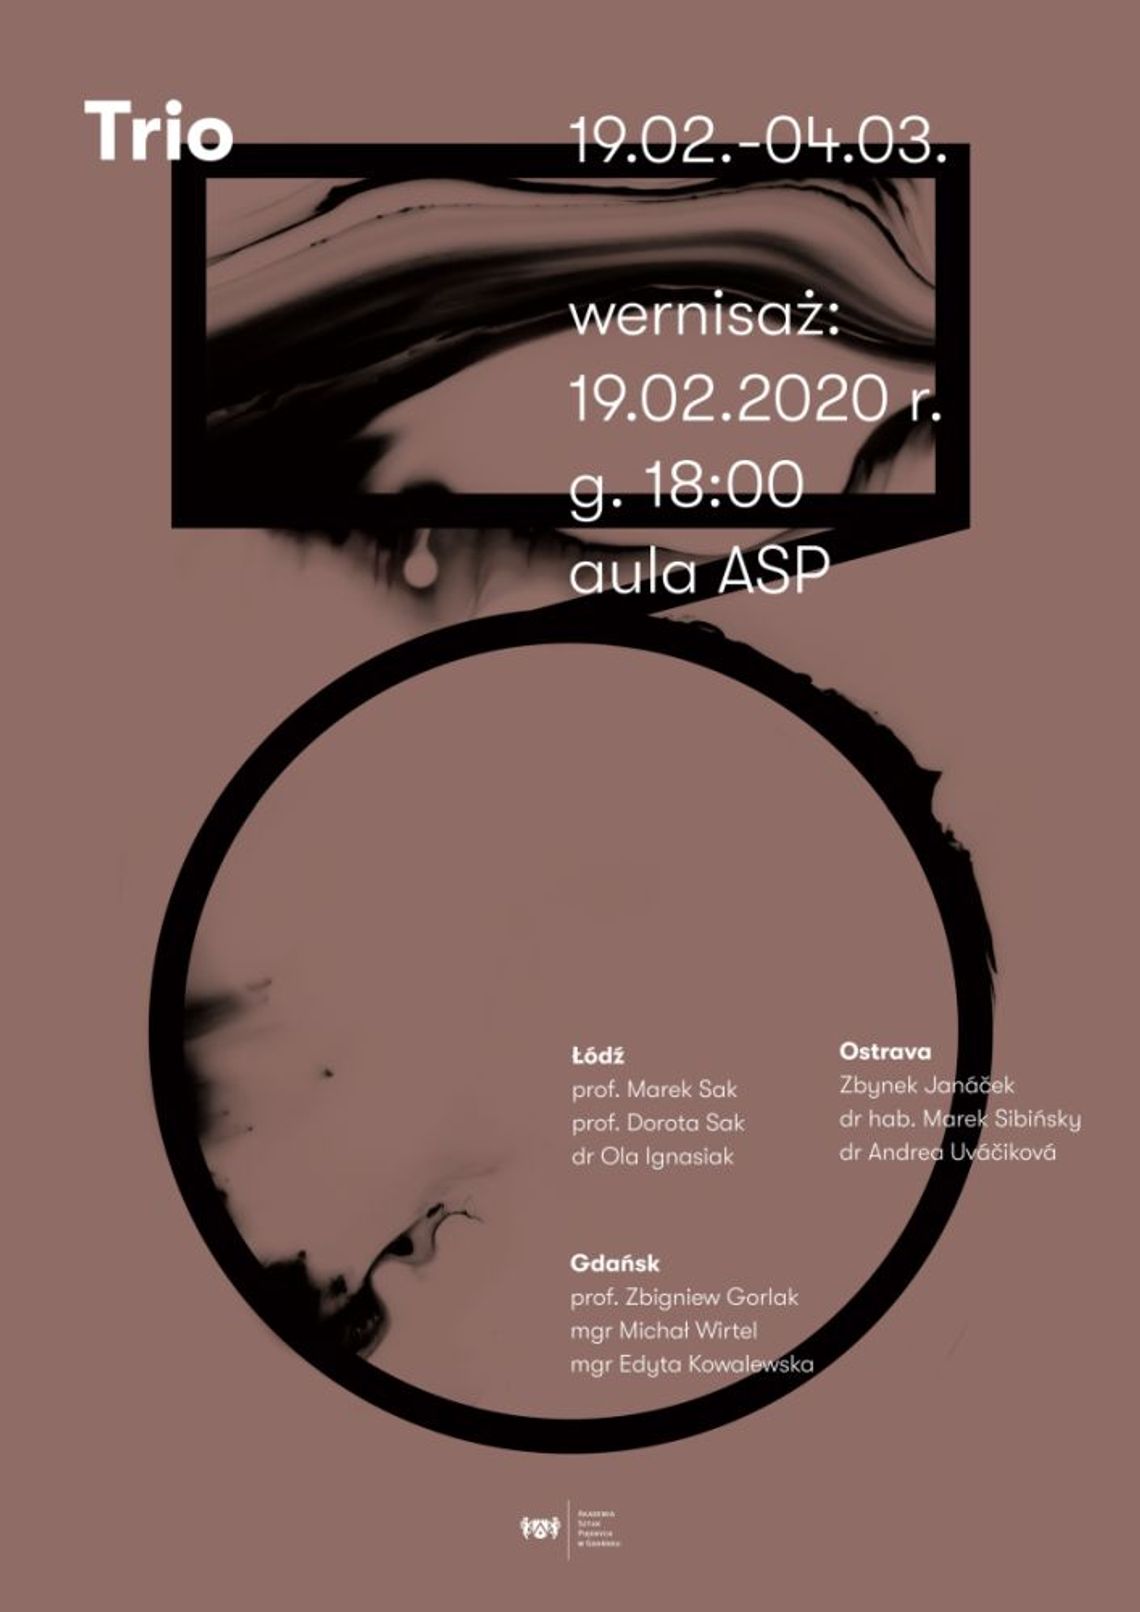 Wystawa Trio: Gdańsk, Łódź, Ostrava